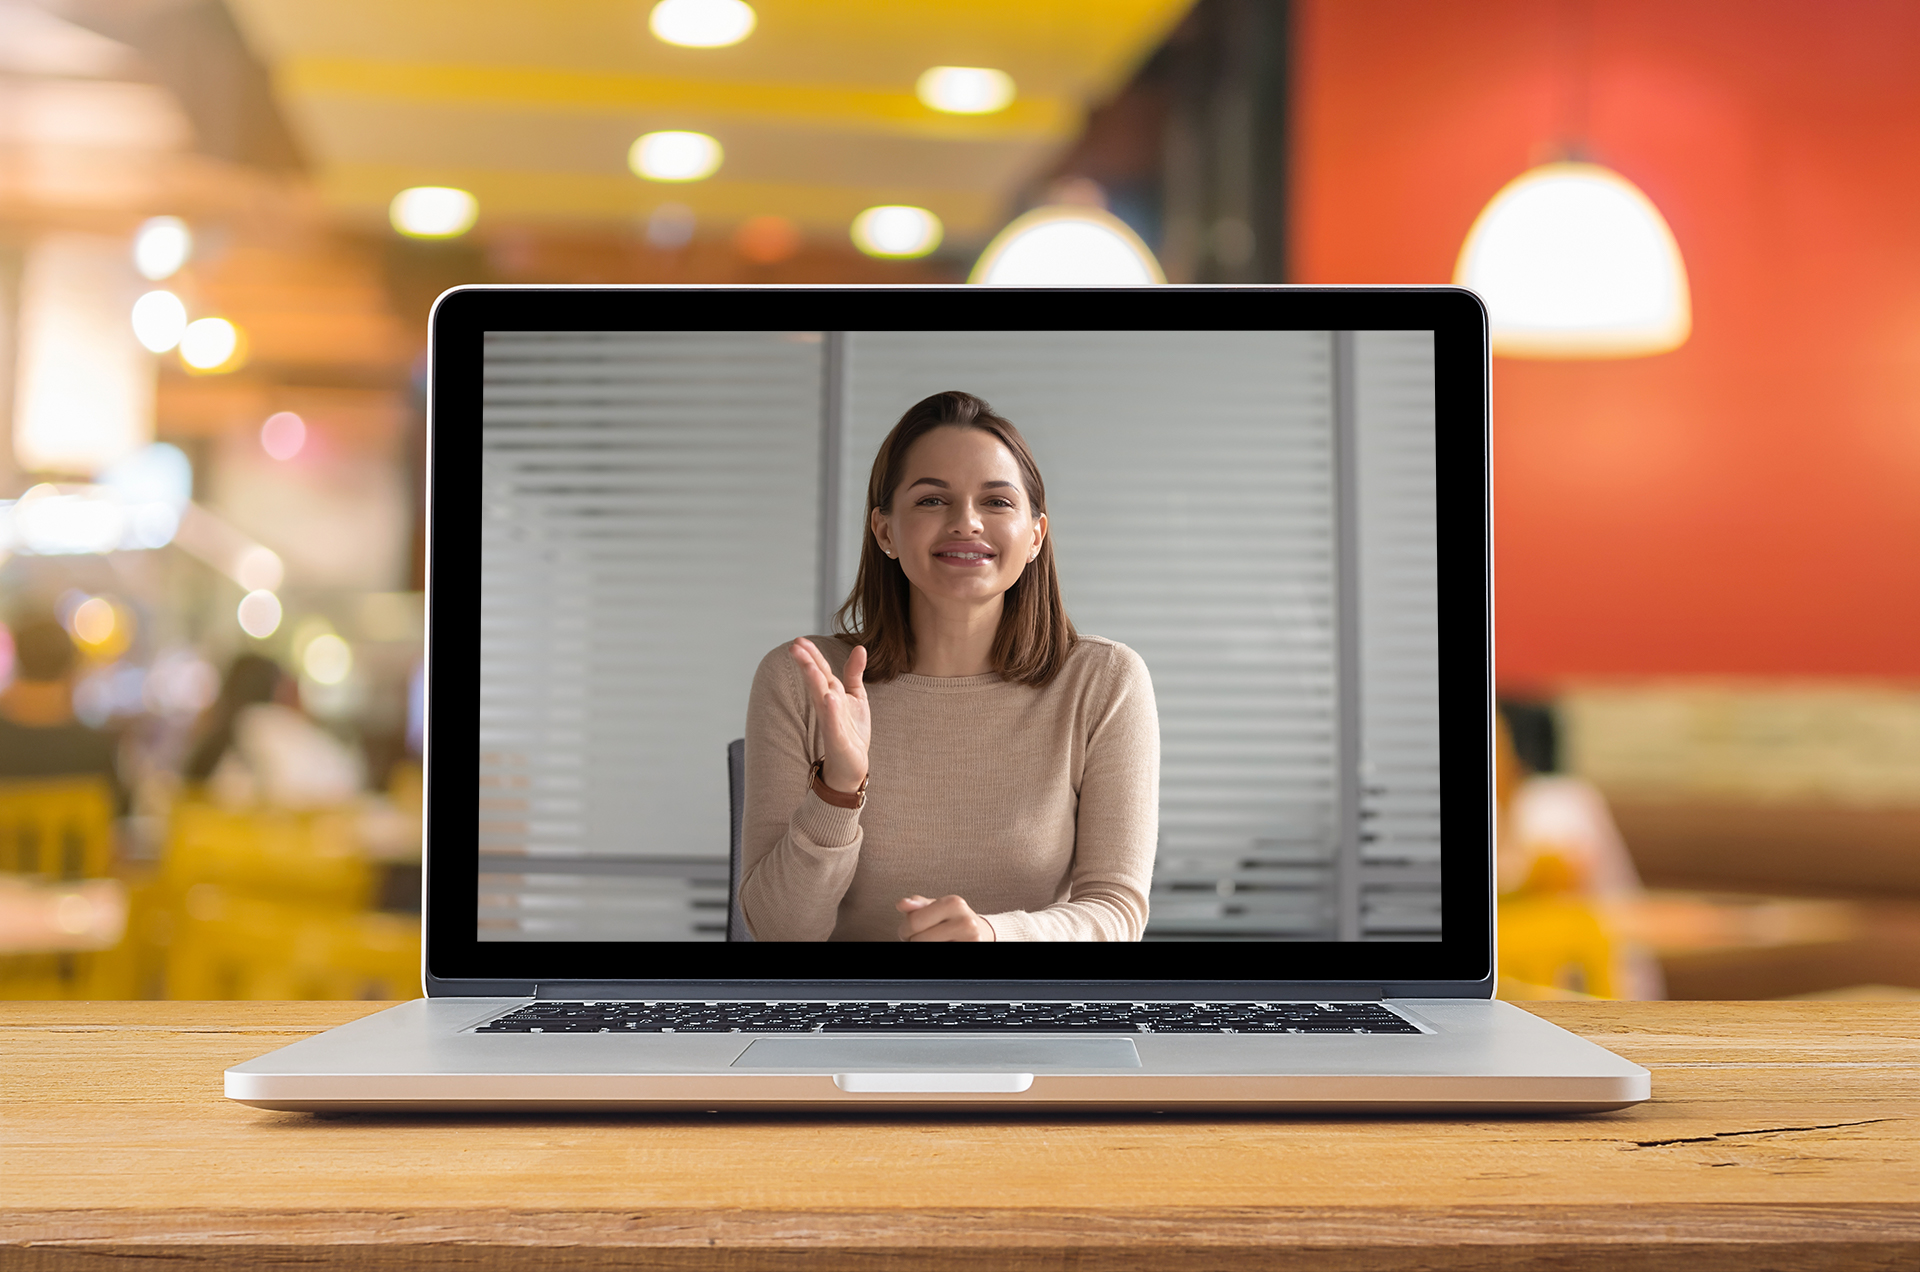 laptop cu imaginea unei femei in videoconferinta; reprezentare a unei sesiuni de mentorat online (prin videoconferinta)